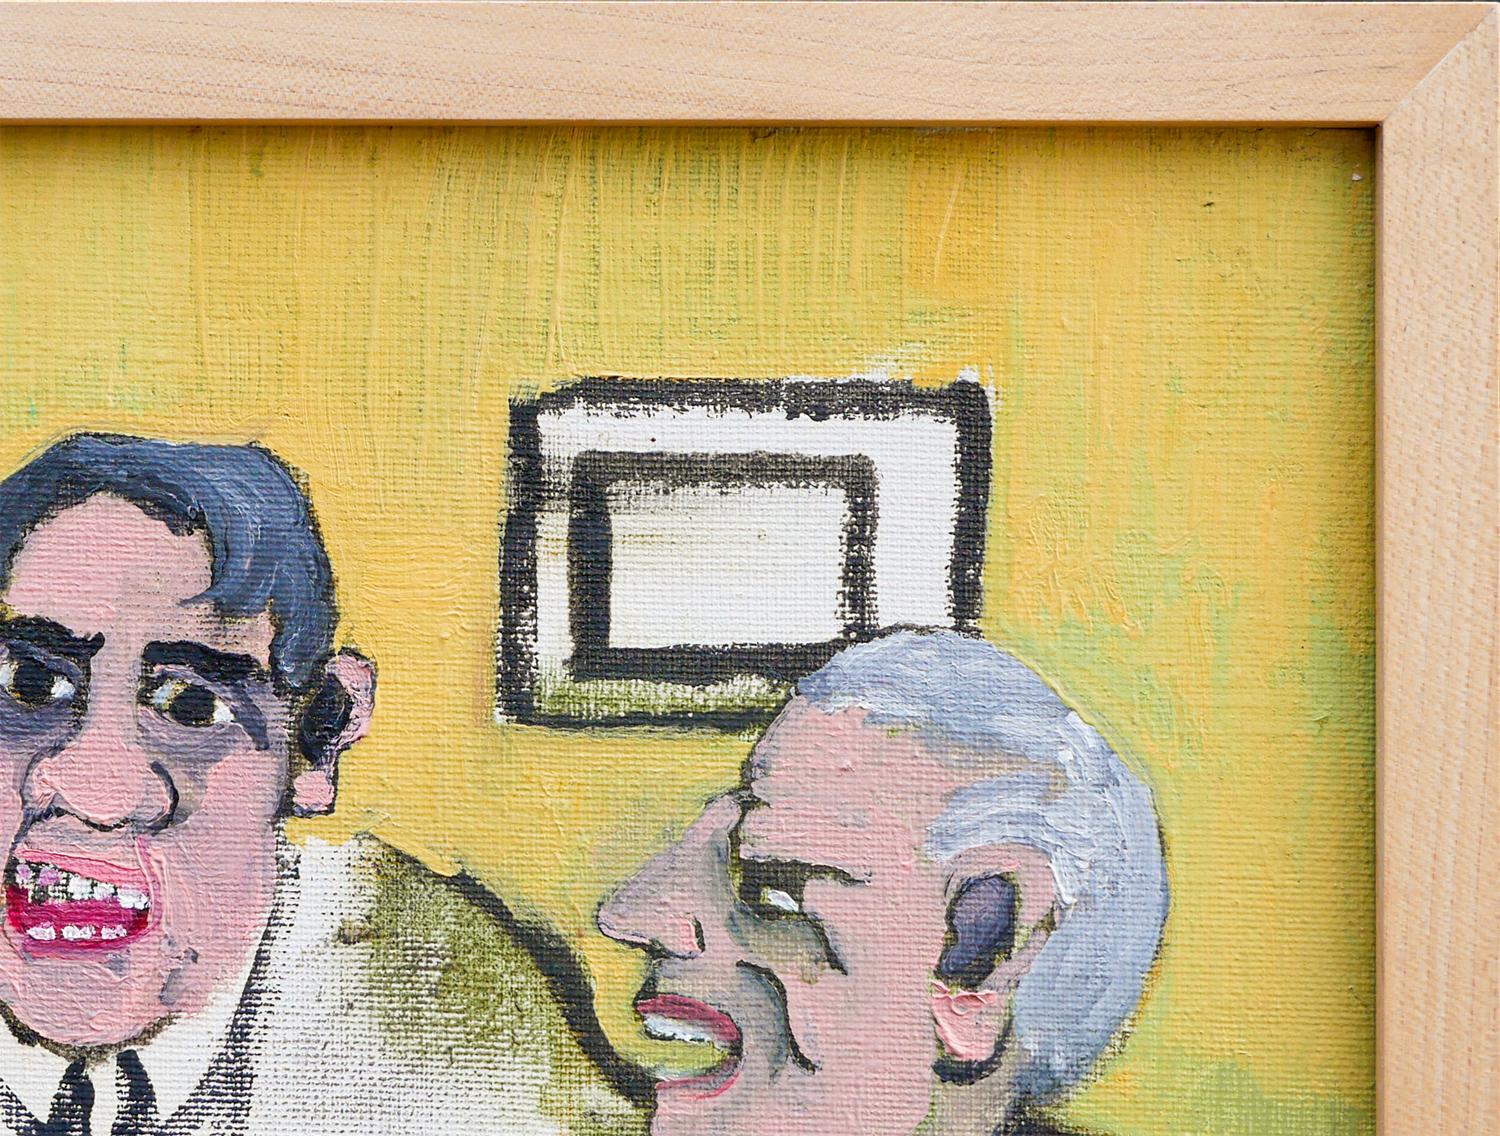 Peinture figurative abstraite jaune, brune et blanche attribuée à Ray Collins. Le petit tableau représente un groupe de trois hommes autour d'une table dans un décor intérieur. La pièce n'est pas signée. Encadré dans un simple cadre en bois